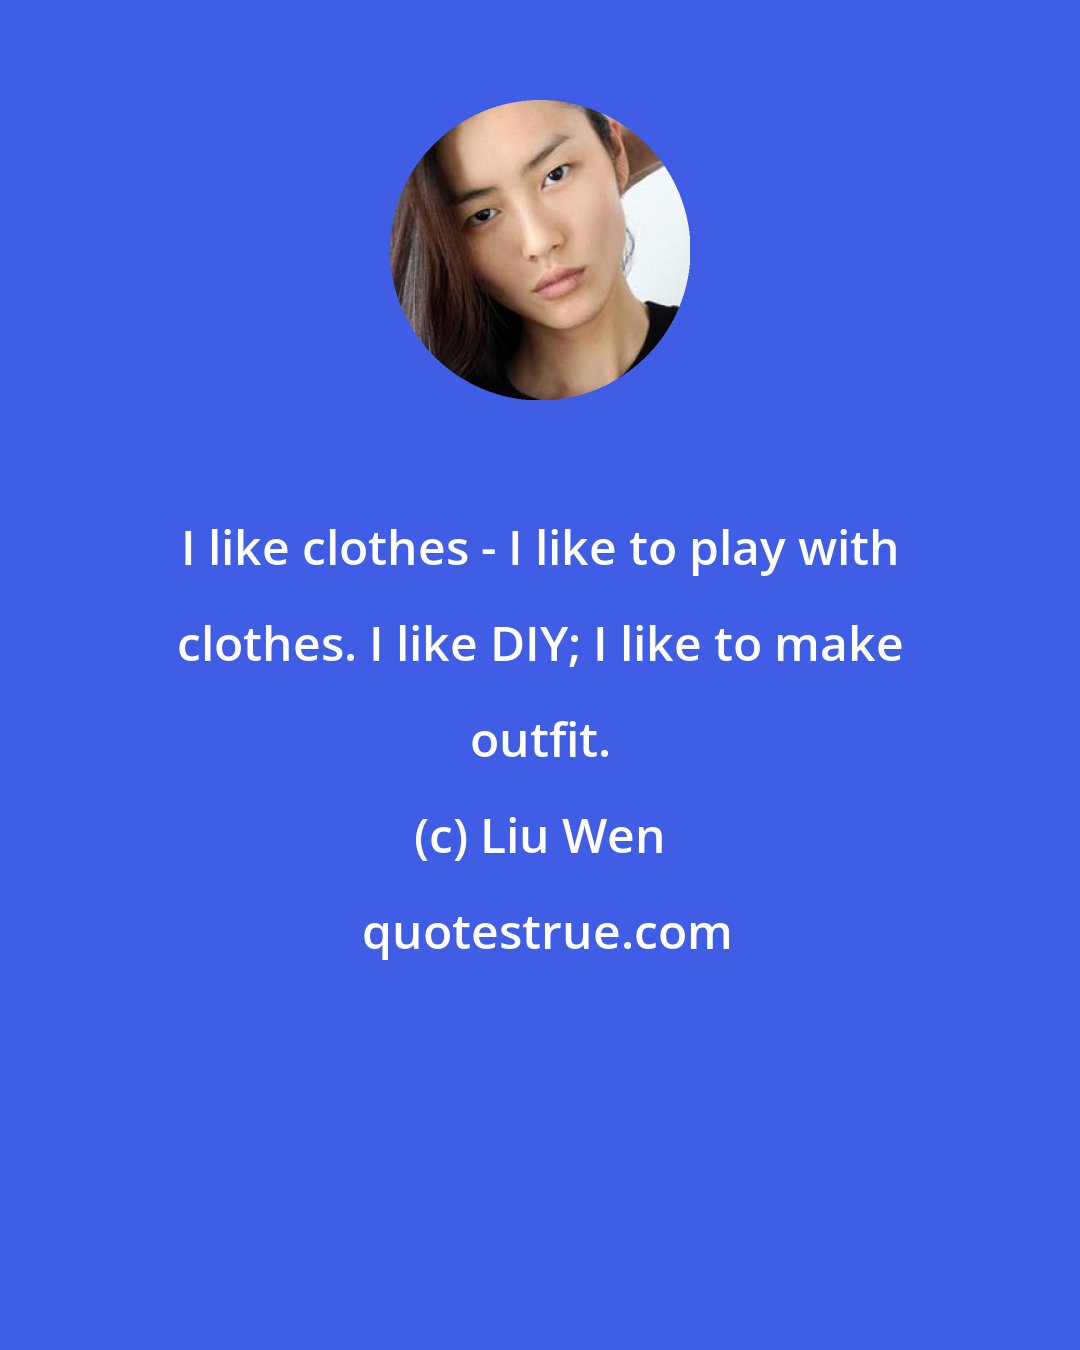 Liu Wen: I like clothes - I like to play with clothes. I like DIY; I like to make outfit.